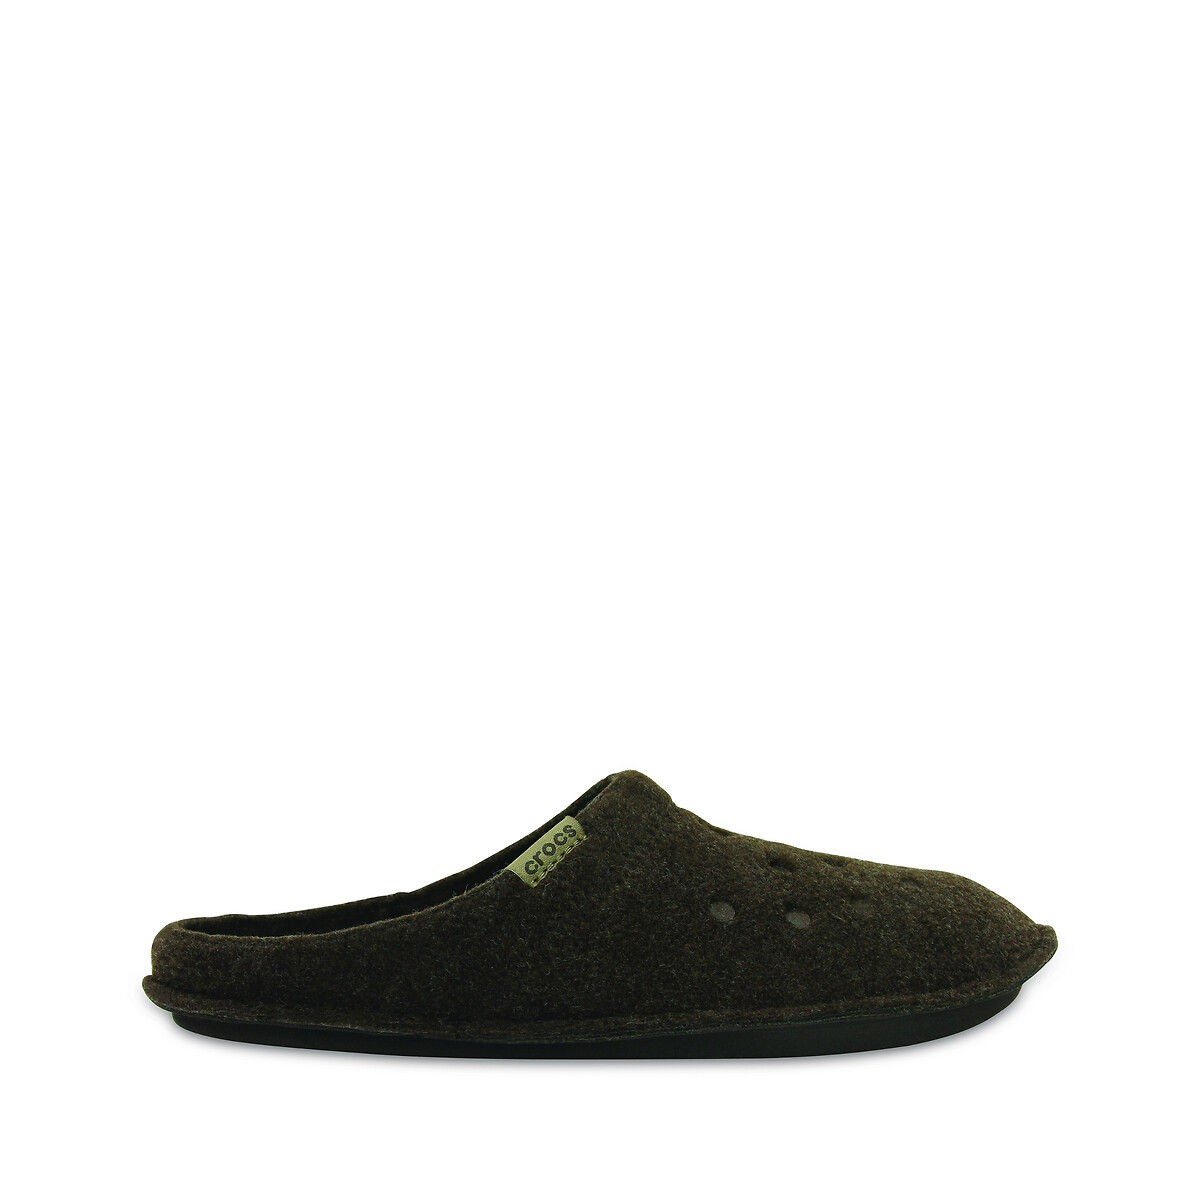 Classic slipper slippers Crocs | La Redoute